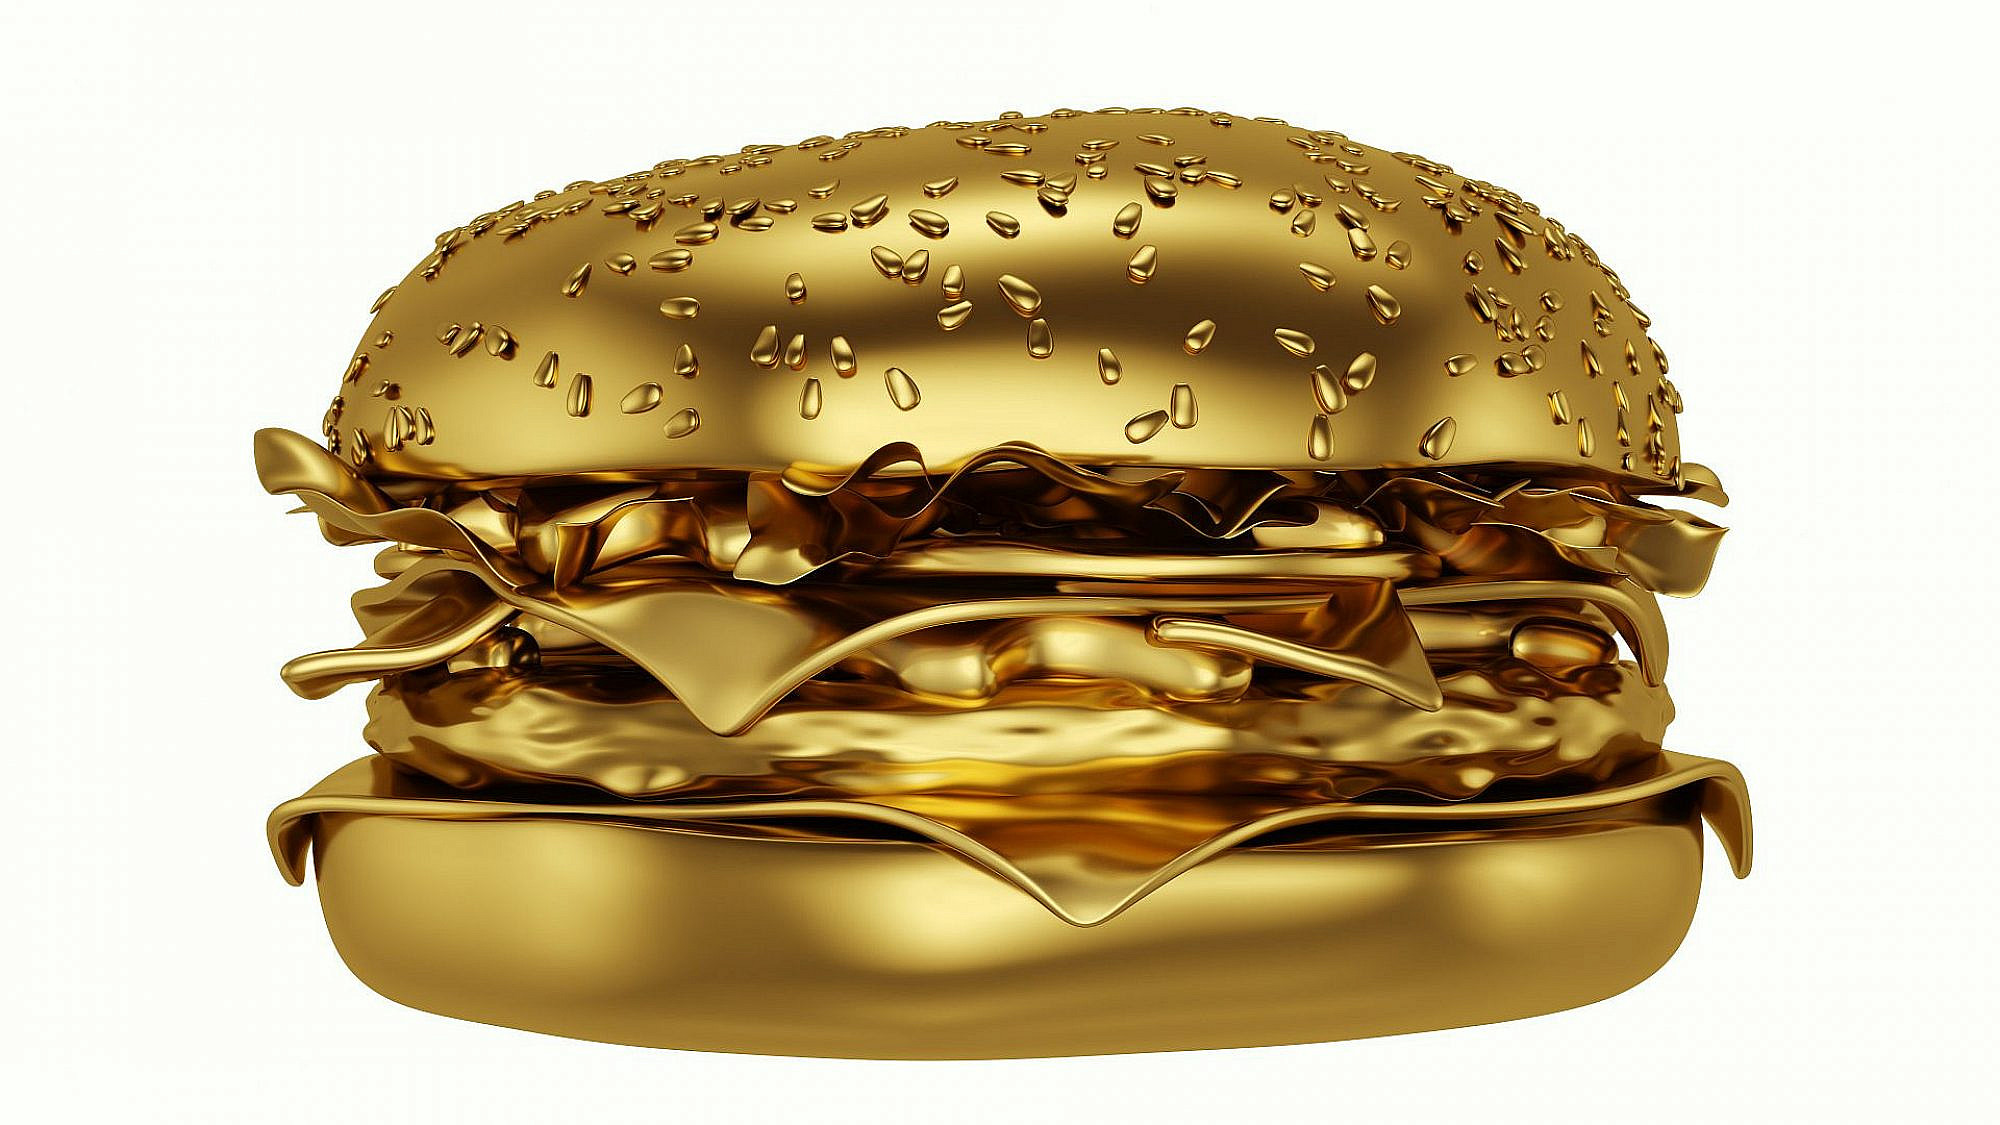 המבורגר ב-100 שקל? ממה הוא עשוי, זהב? תכלס כן (צילום: שאטרסטוק)